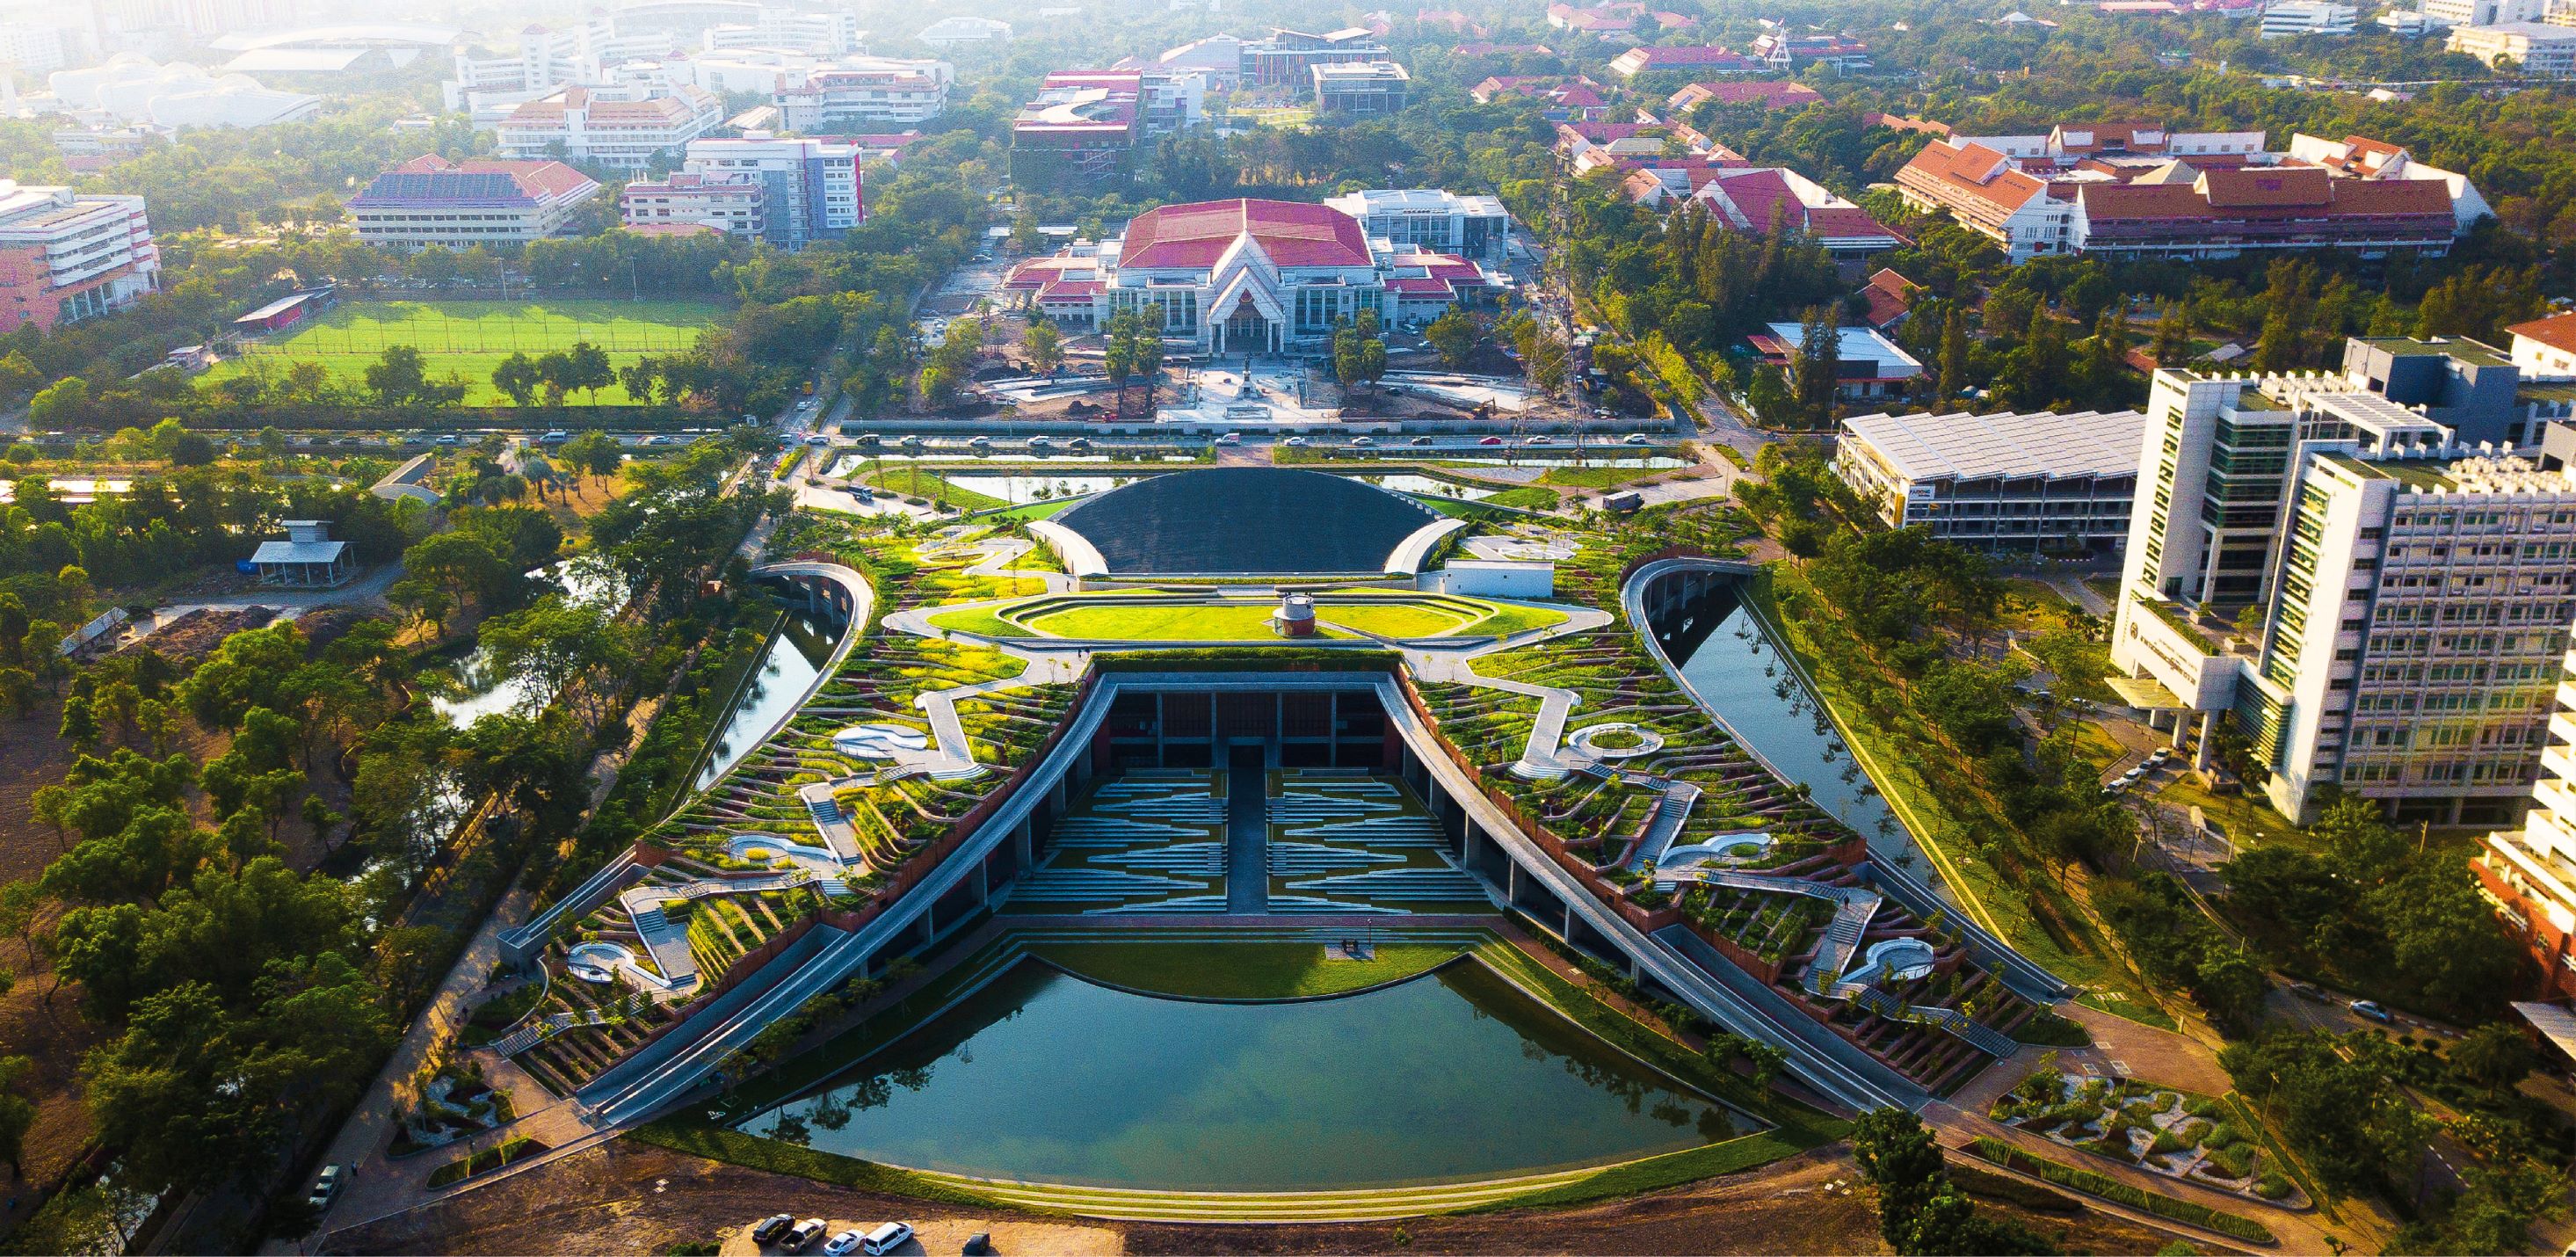 幾何建築之美 - 亞洲最大屋頂農場